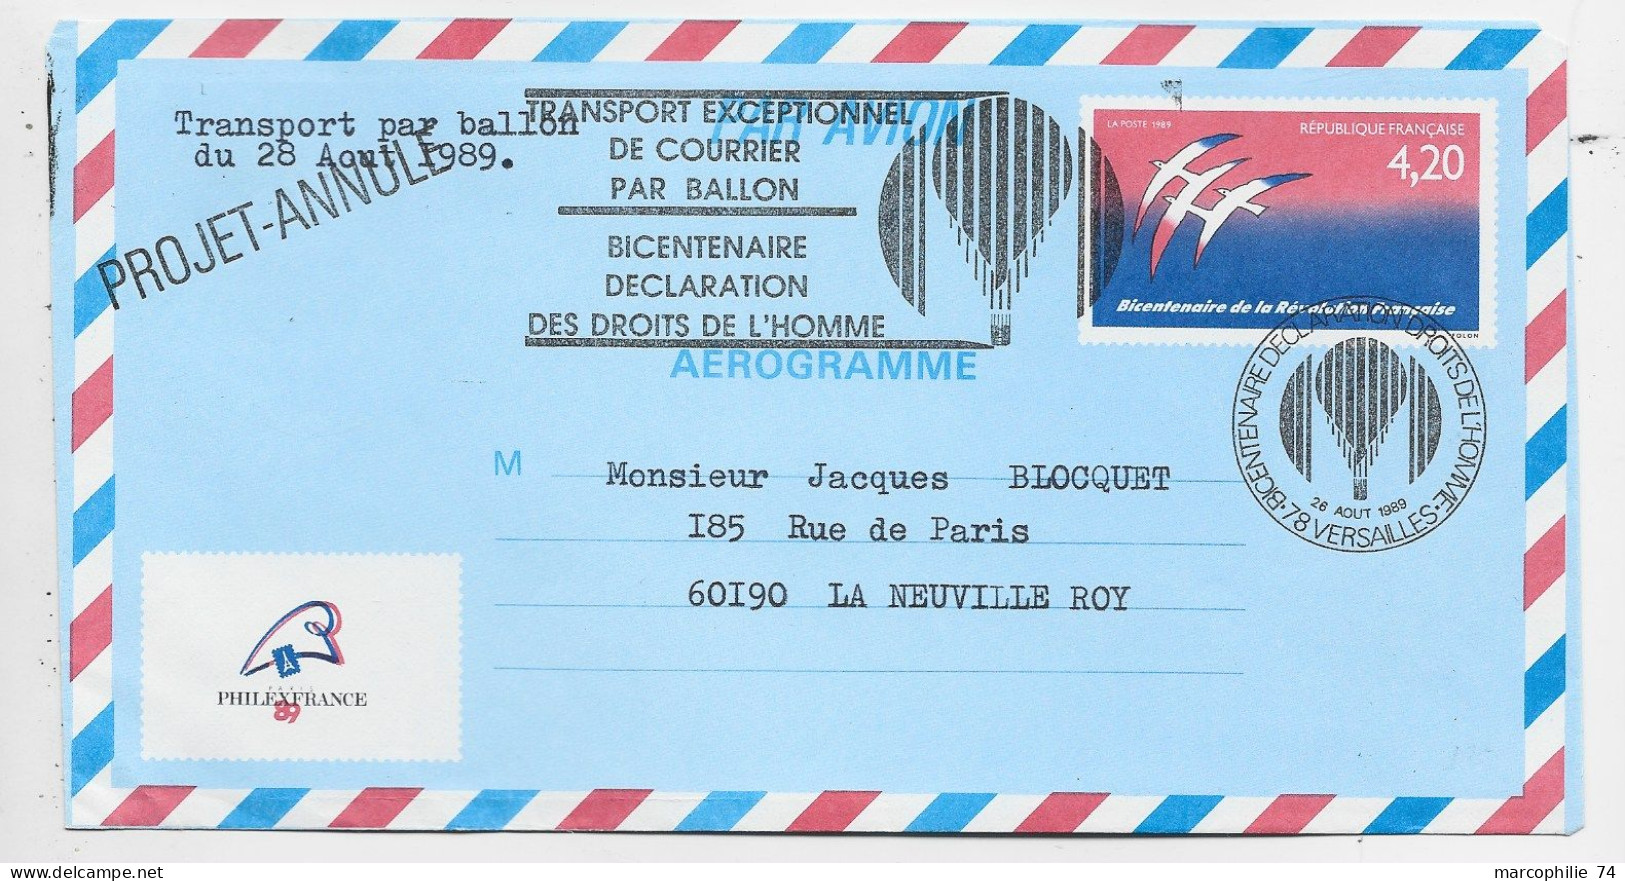 FRANCE AEROGRAMME 4.20 FOLON ENVELOPPE COVER TRANSPORT EXCEPTIONNEL PAR BALLON 1989 PHILEX PROJET ANNULE - Aerogramas